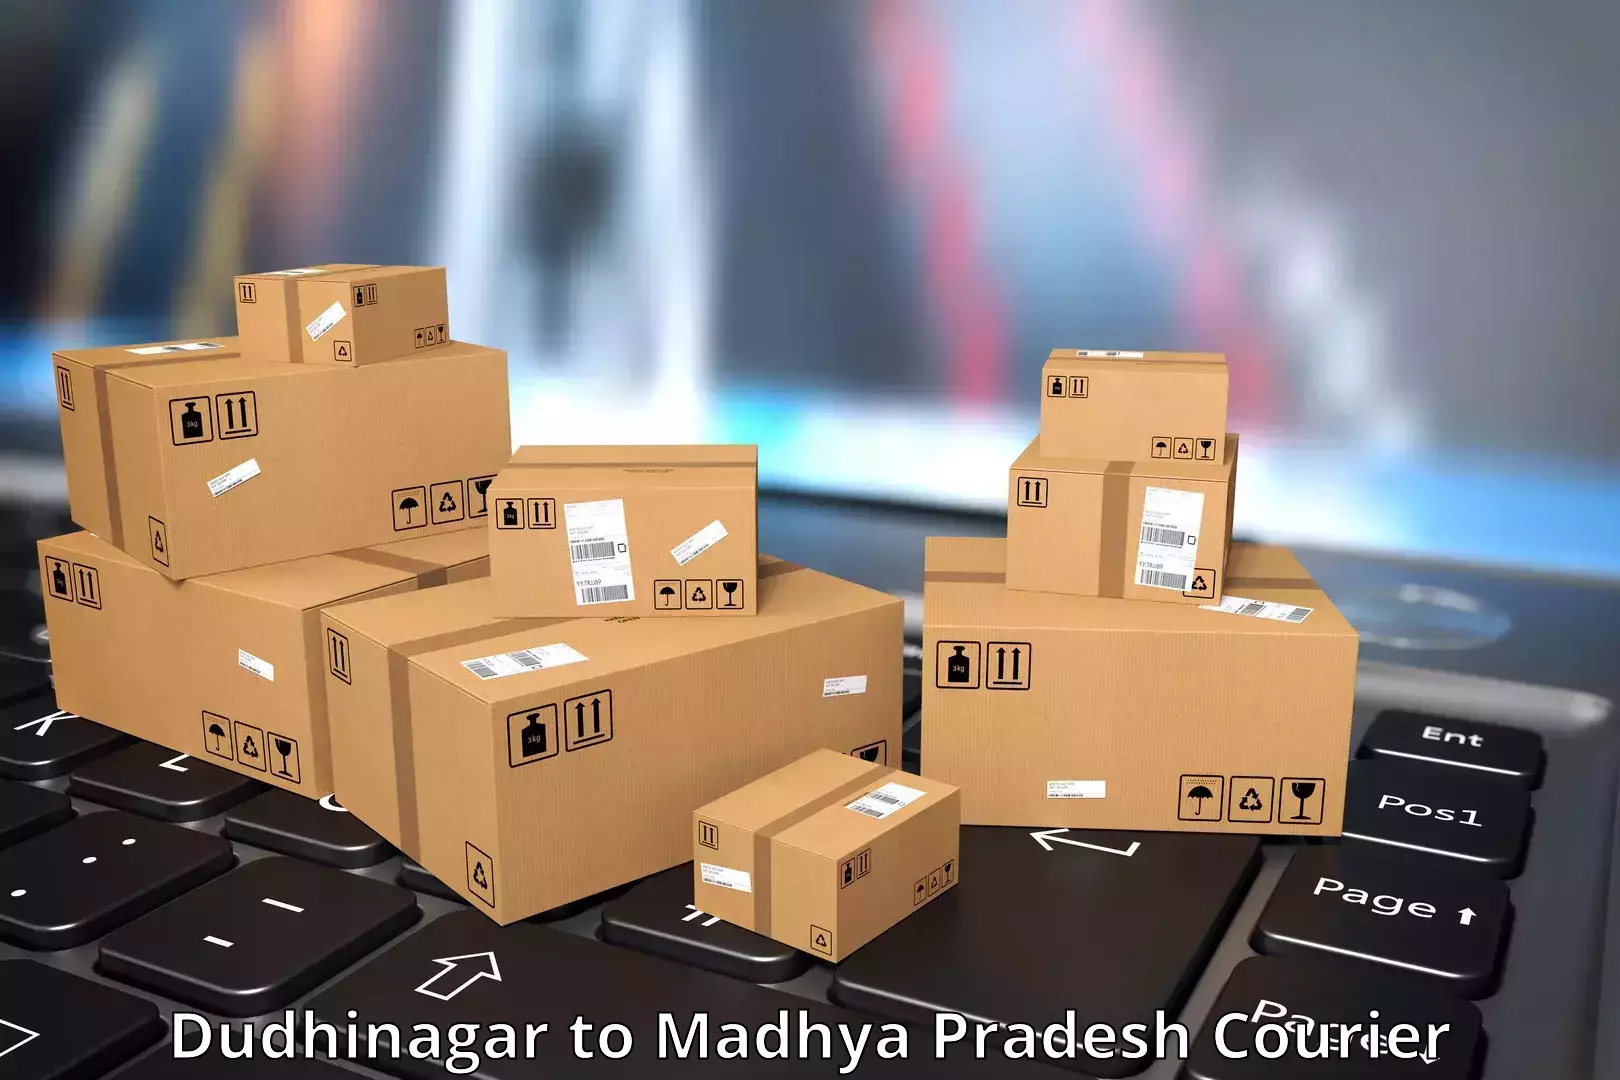 User-friendly delivery service Dudhinagar to Tarana Ujjain